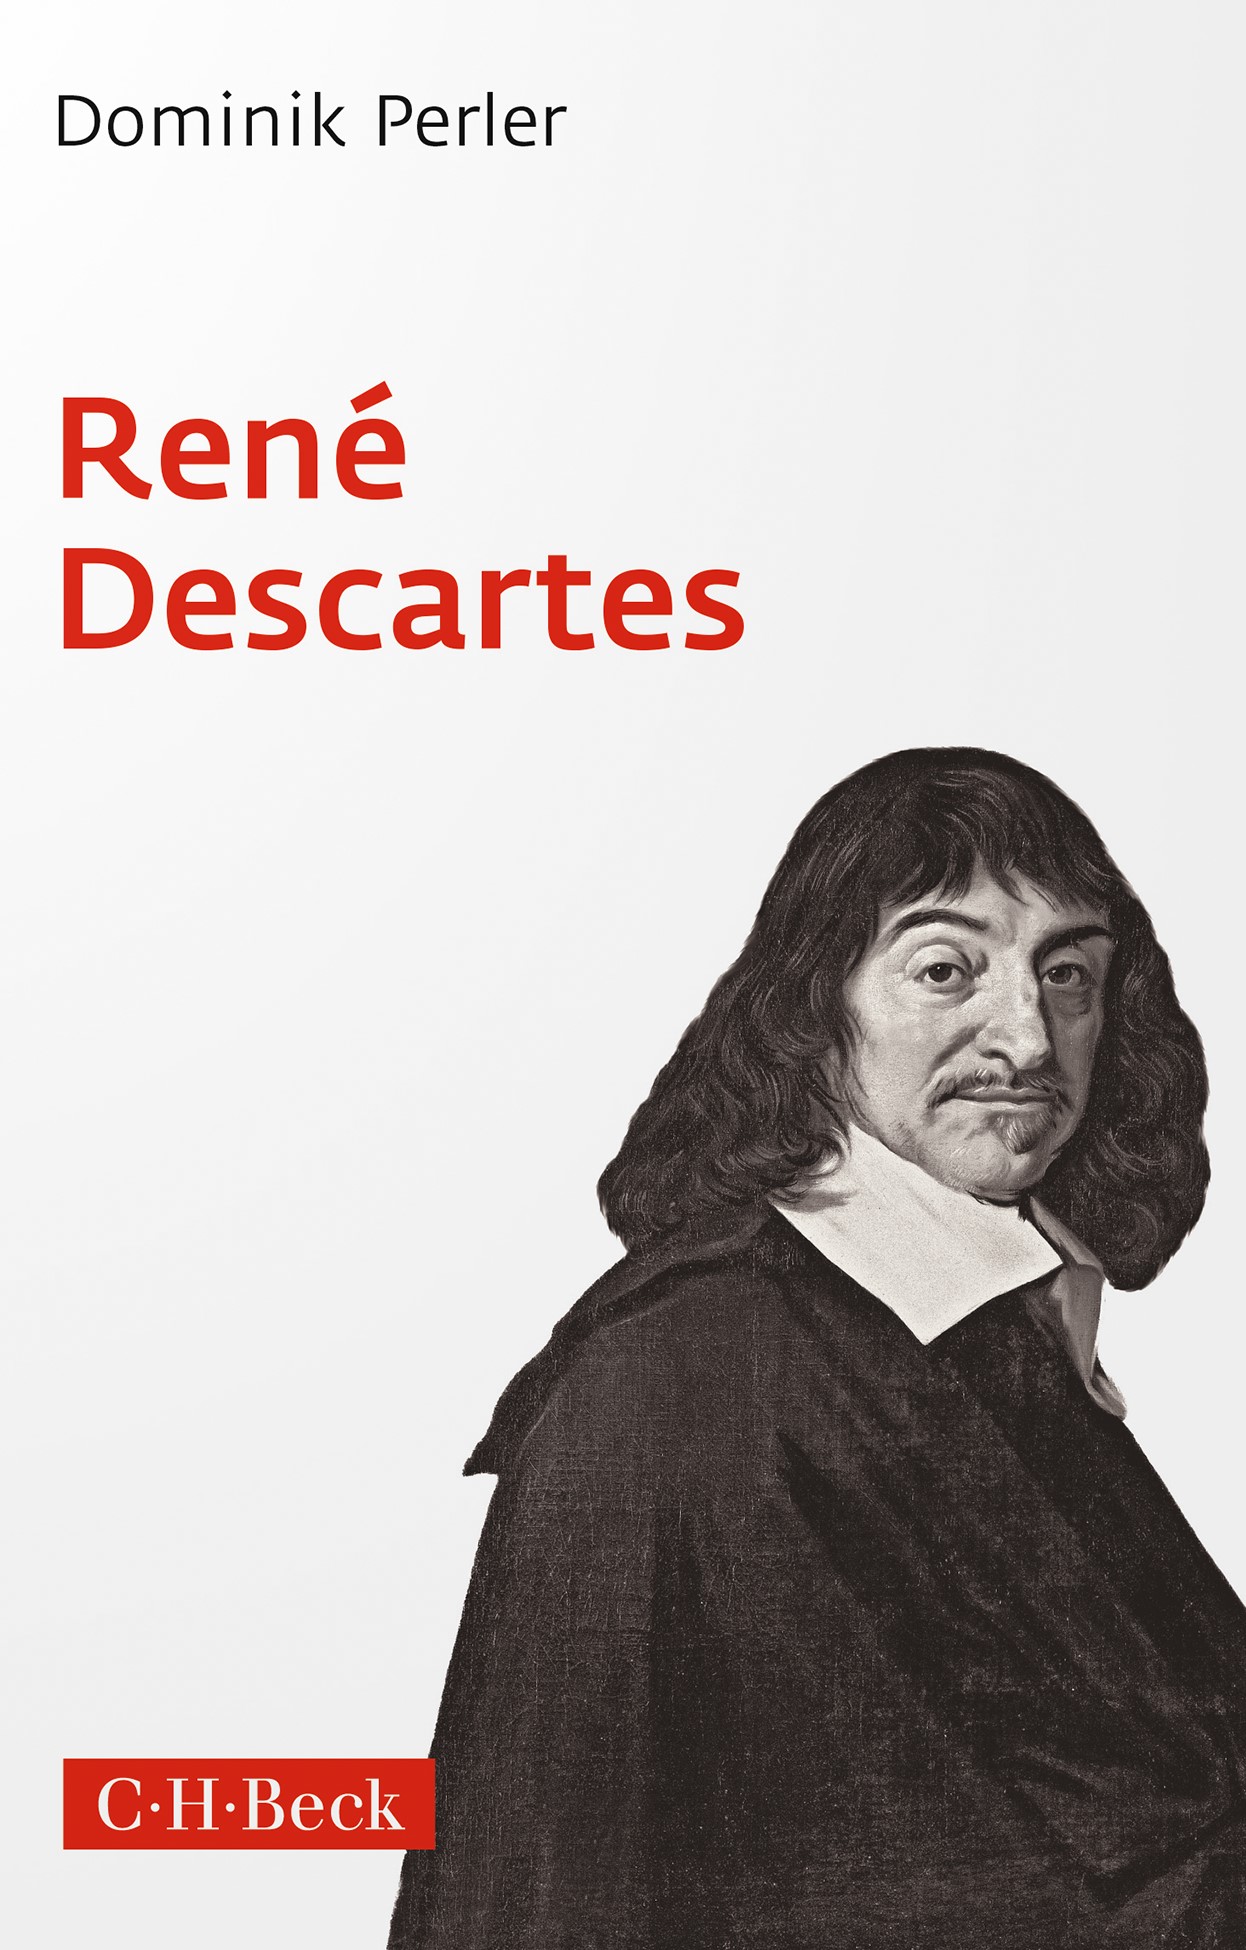 Cover: Perler. Dominik, René Descartes